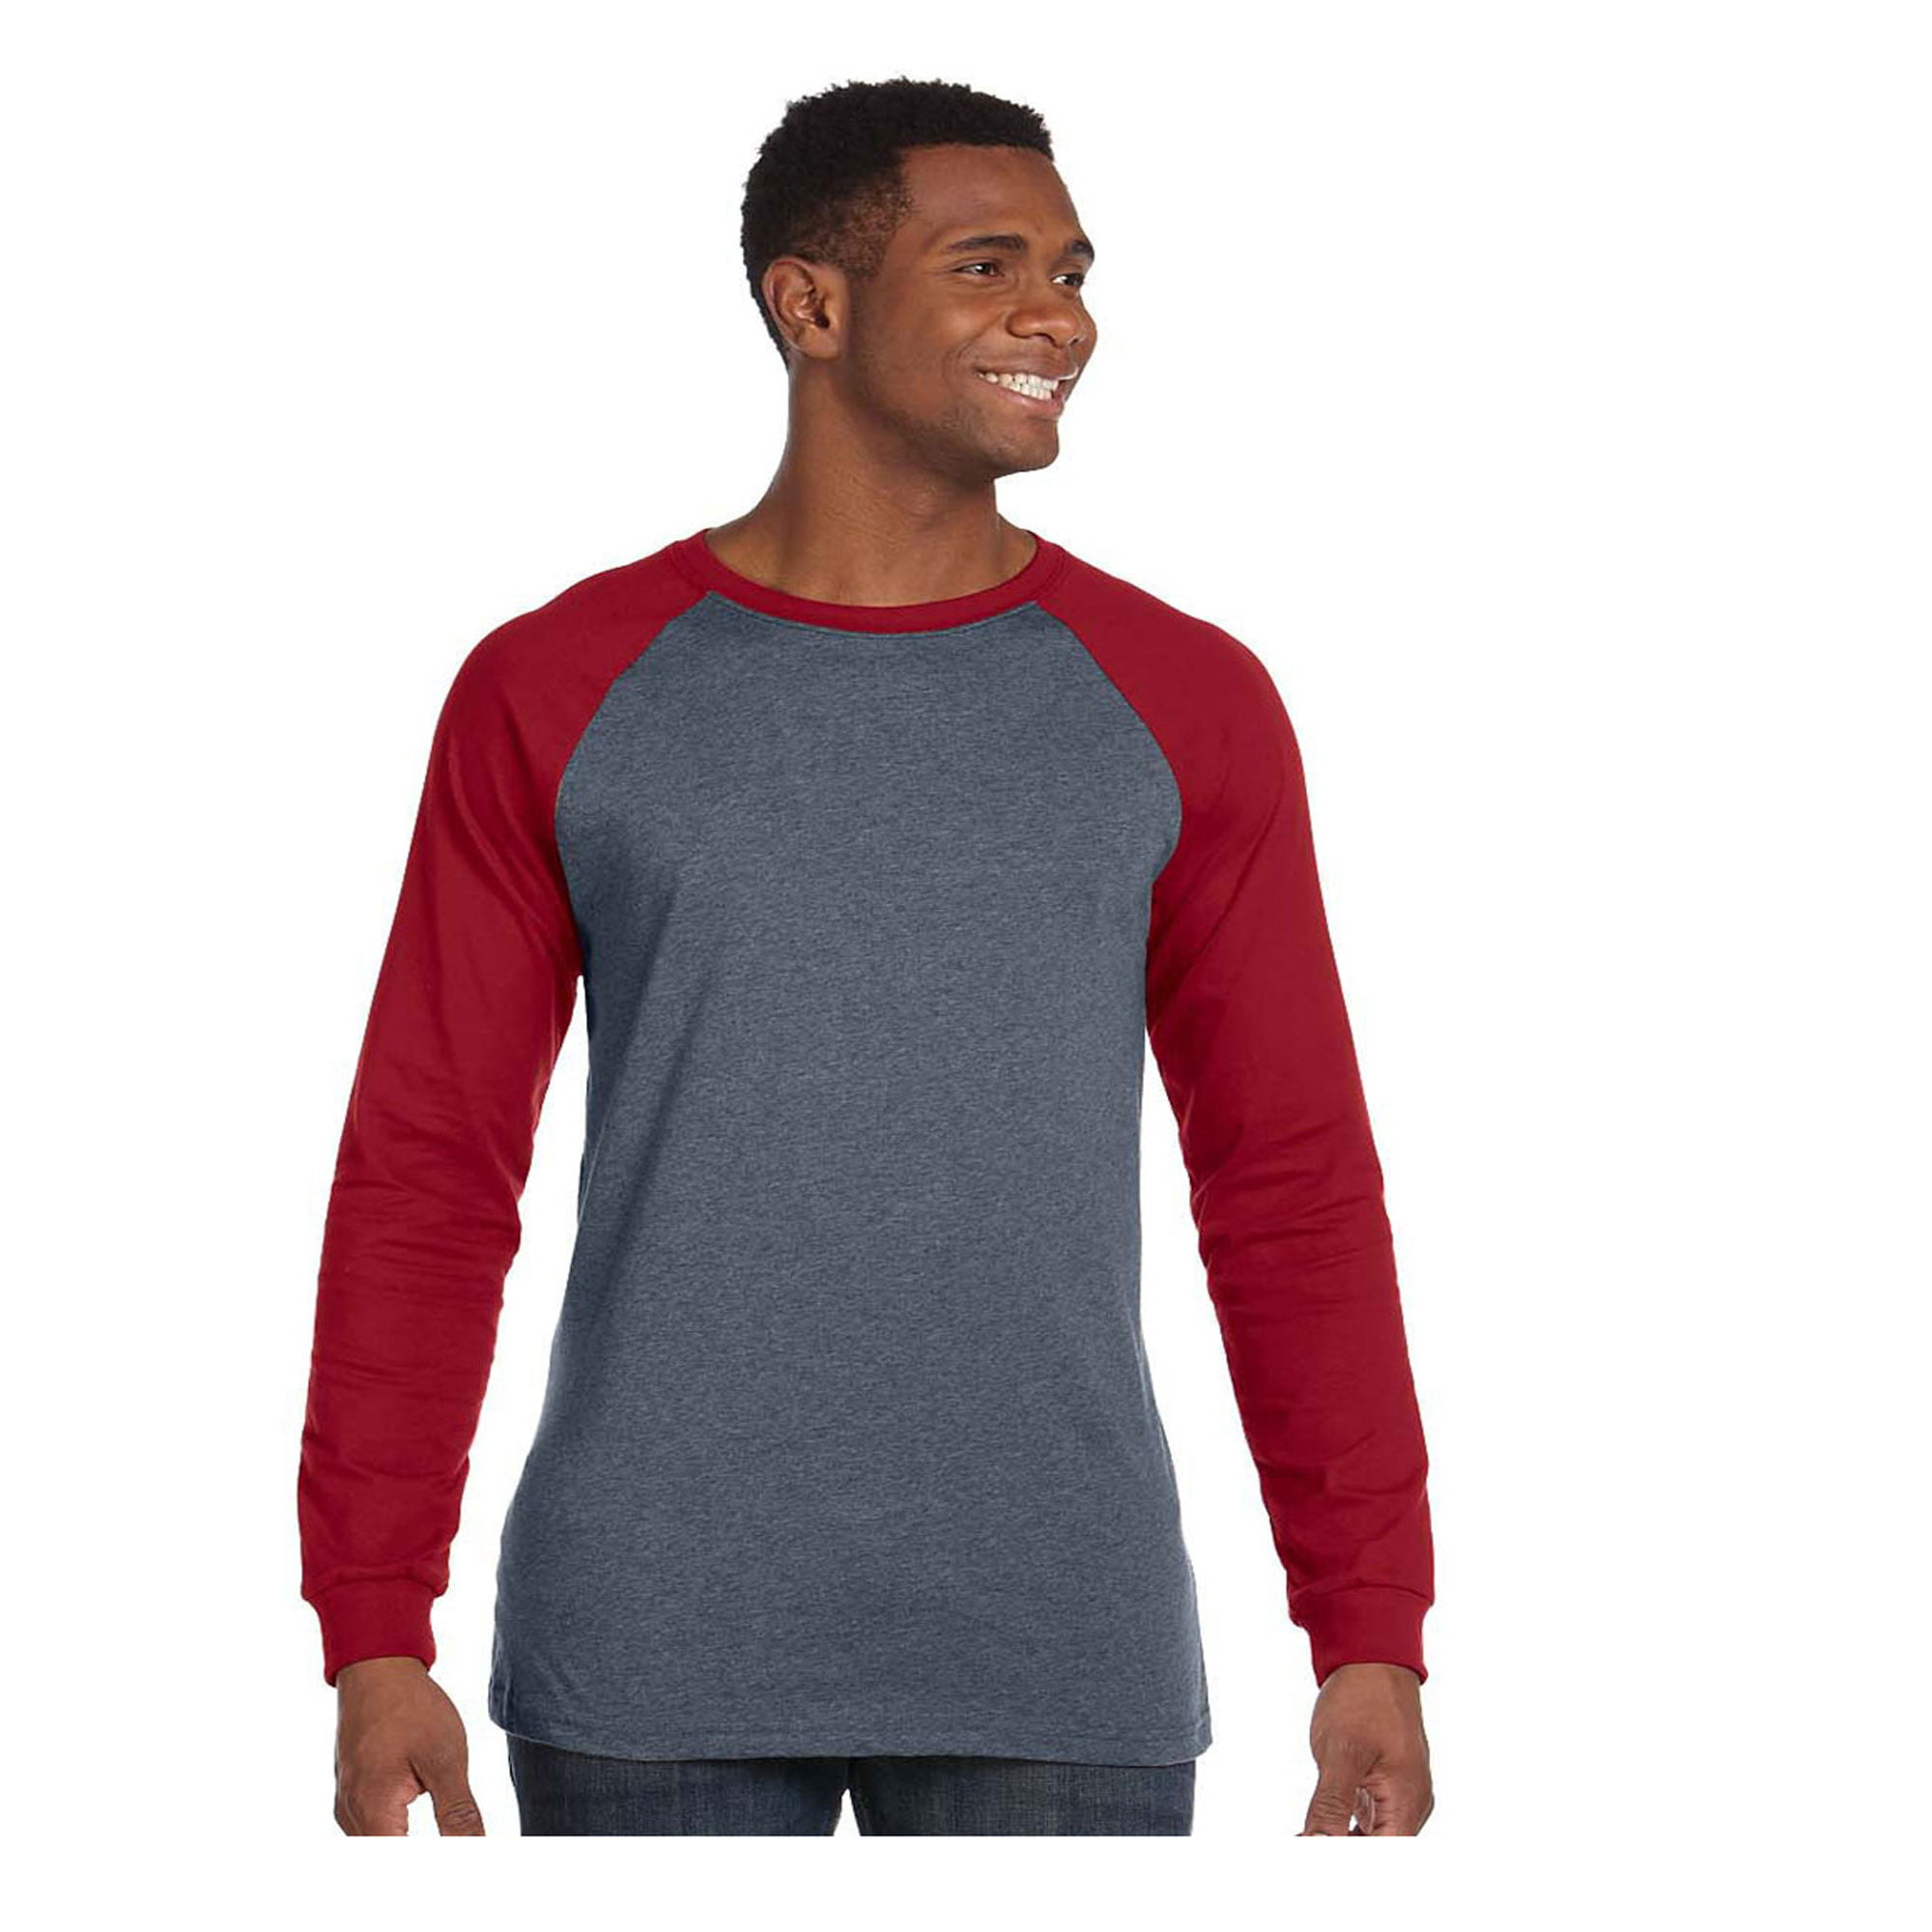 New Men's T Shirt Long Sleeve Baseball T Shirt Cotton Tee Contrast 